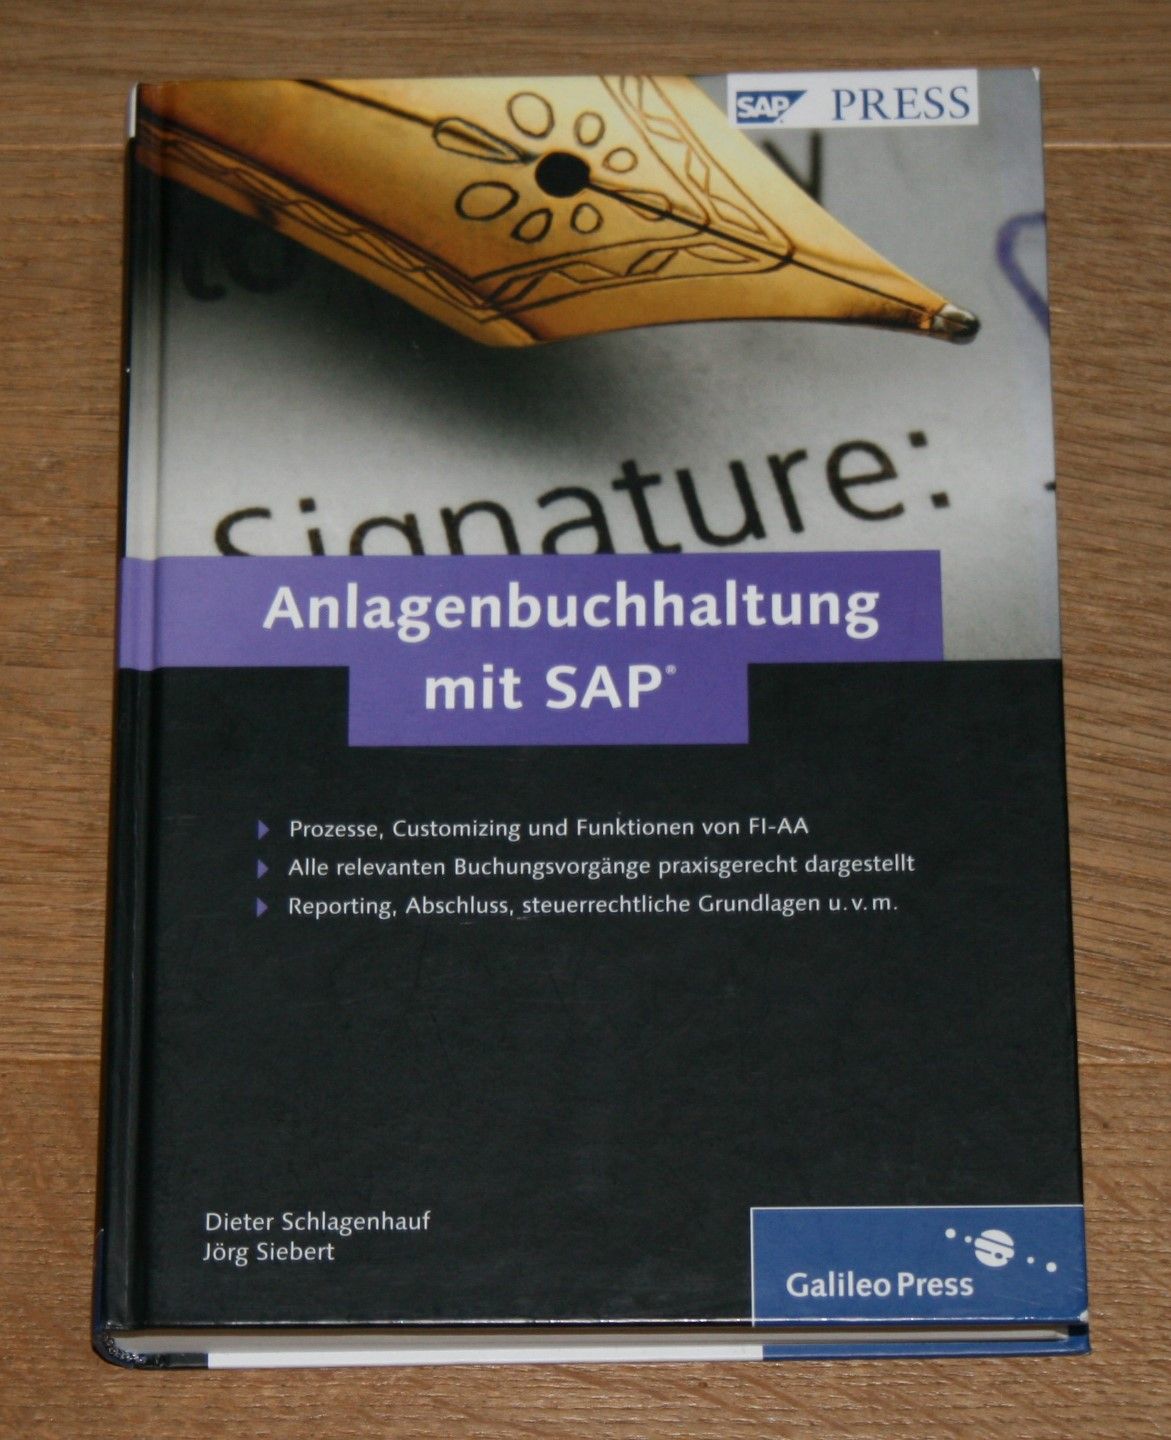 Anlagenbuchhaltung mit SAP. Einrichten, anwenden, optimieren. [SAP press.] - Schlagenhauf, Dieter und Jörg Siebert